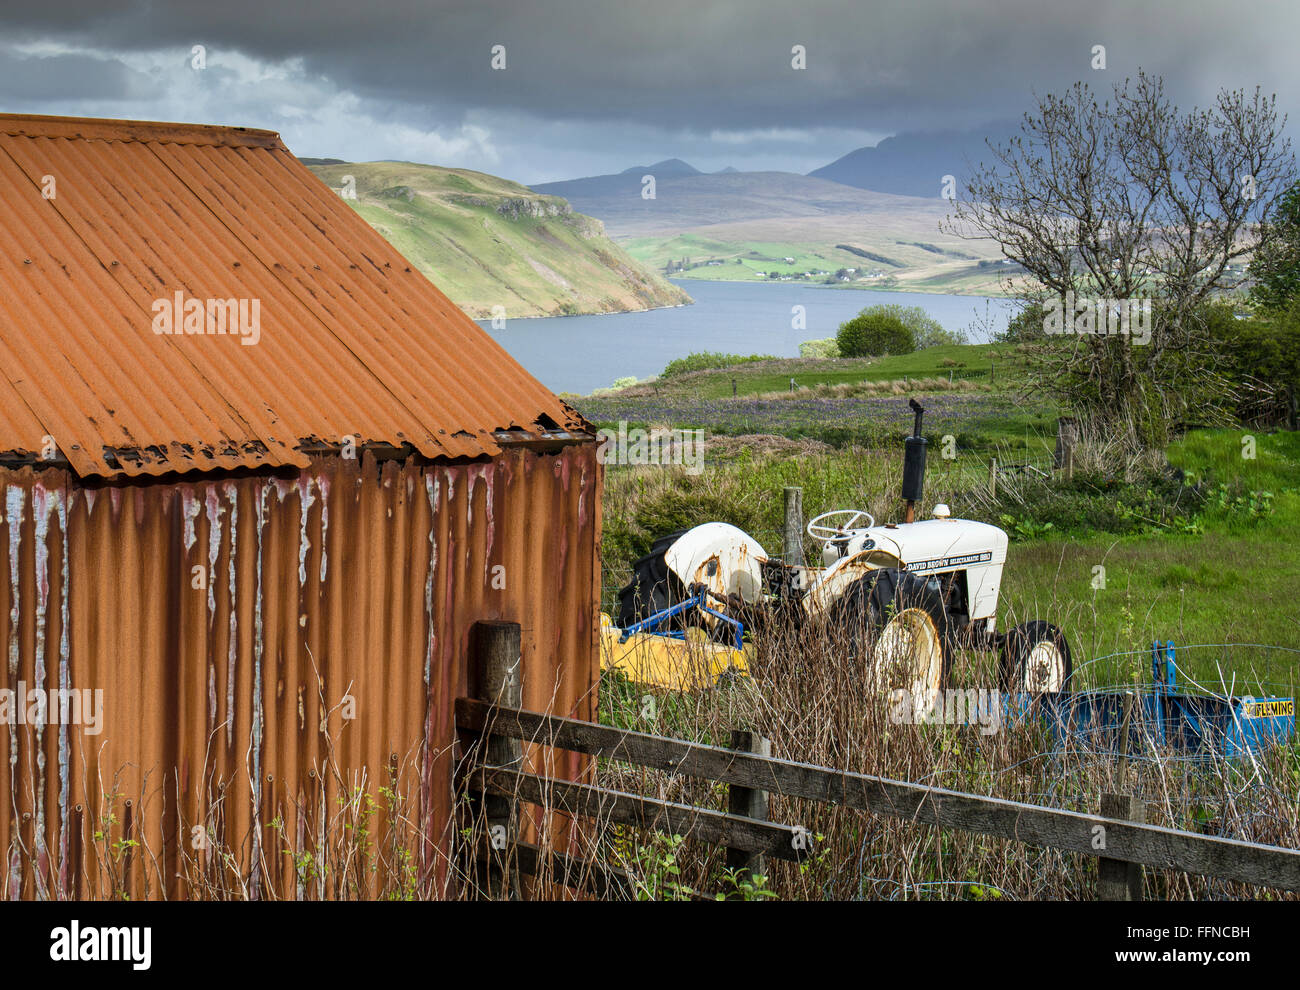 David brown Traktor und alten rostigen Schuppen Landwirtschaft auf skye Stockfoto